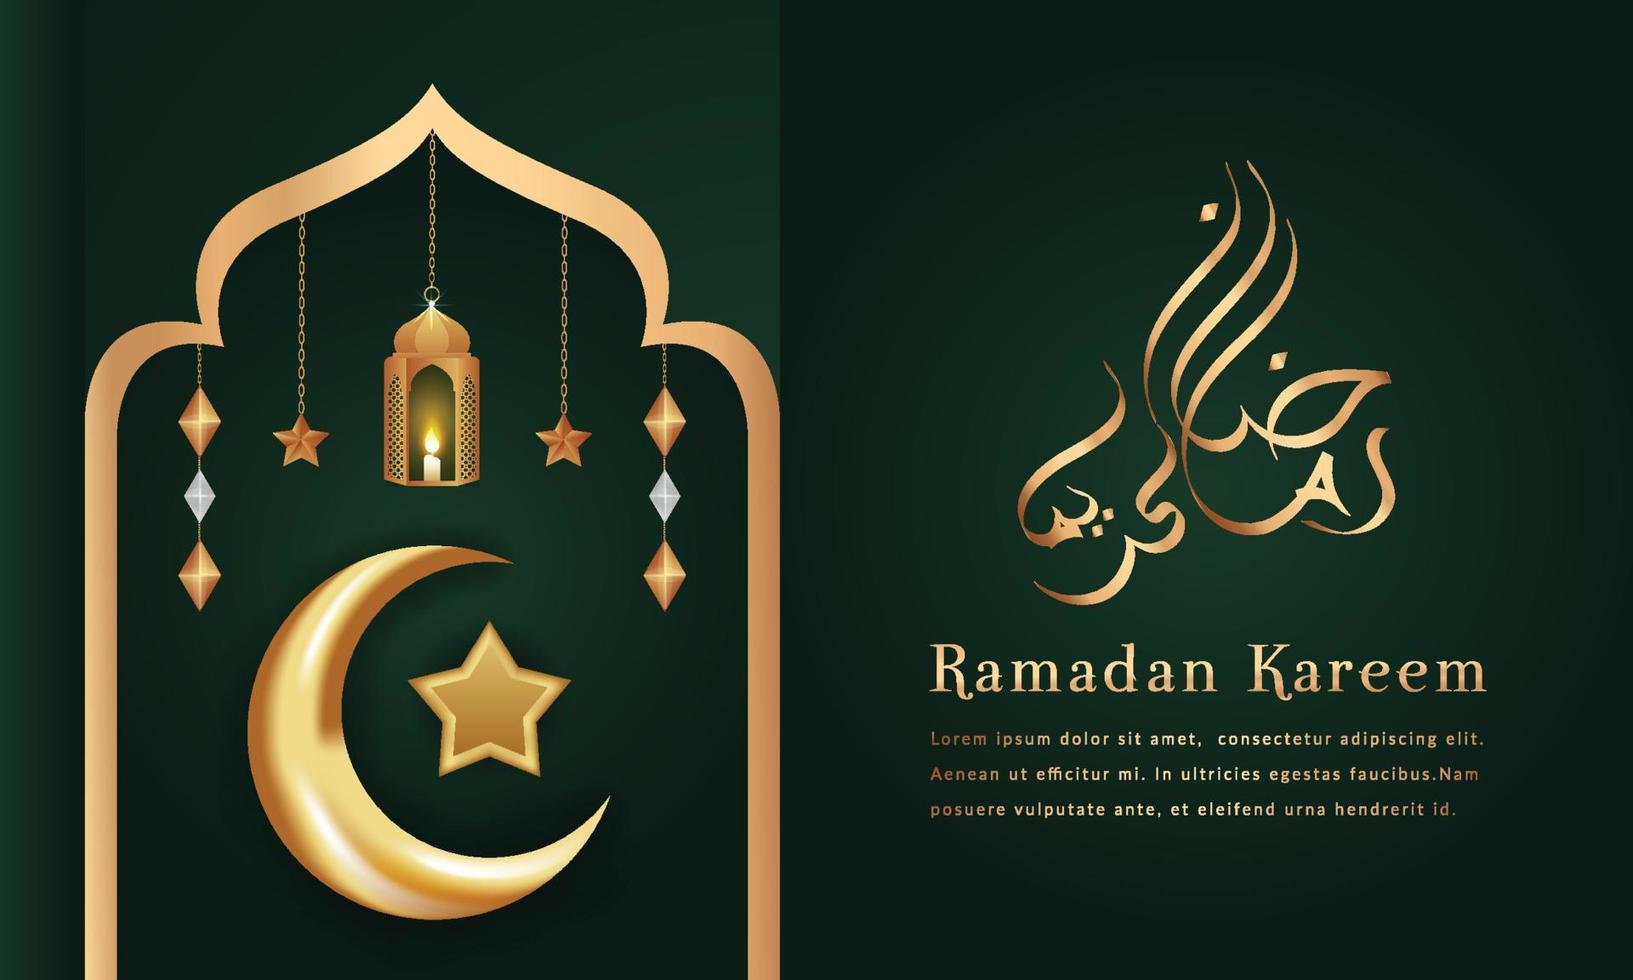 Ramadan kareem groeten Islamitisch festival achtergrond met Arabisch kalligrafie, halve maan maan, wolken, lantaarns, sterren, verlichting, sier- decoratief achtergrond vector